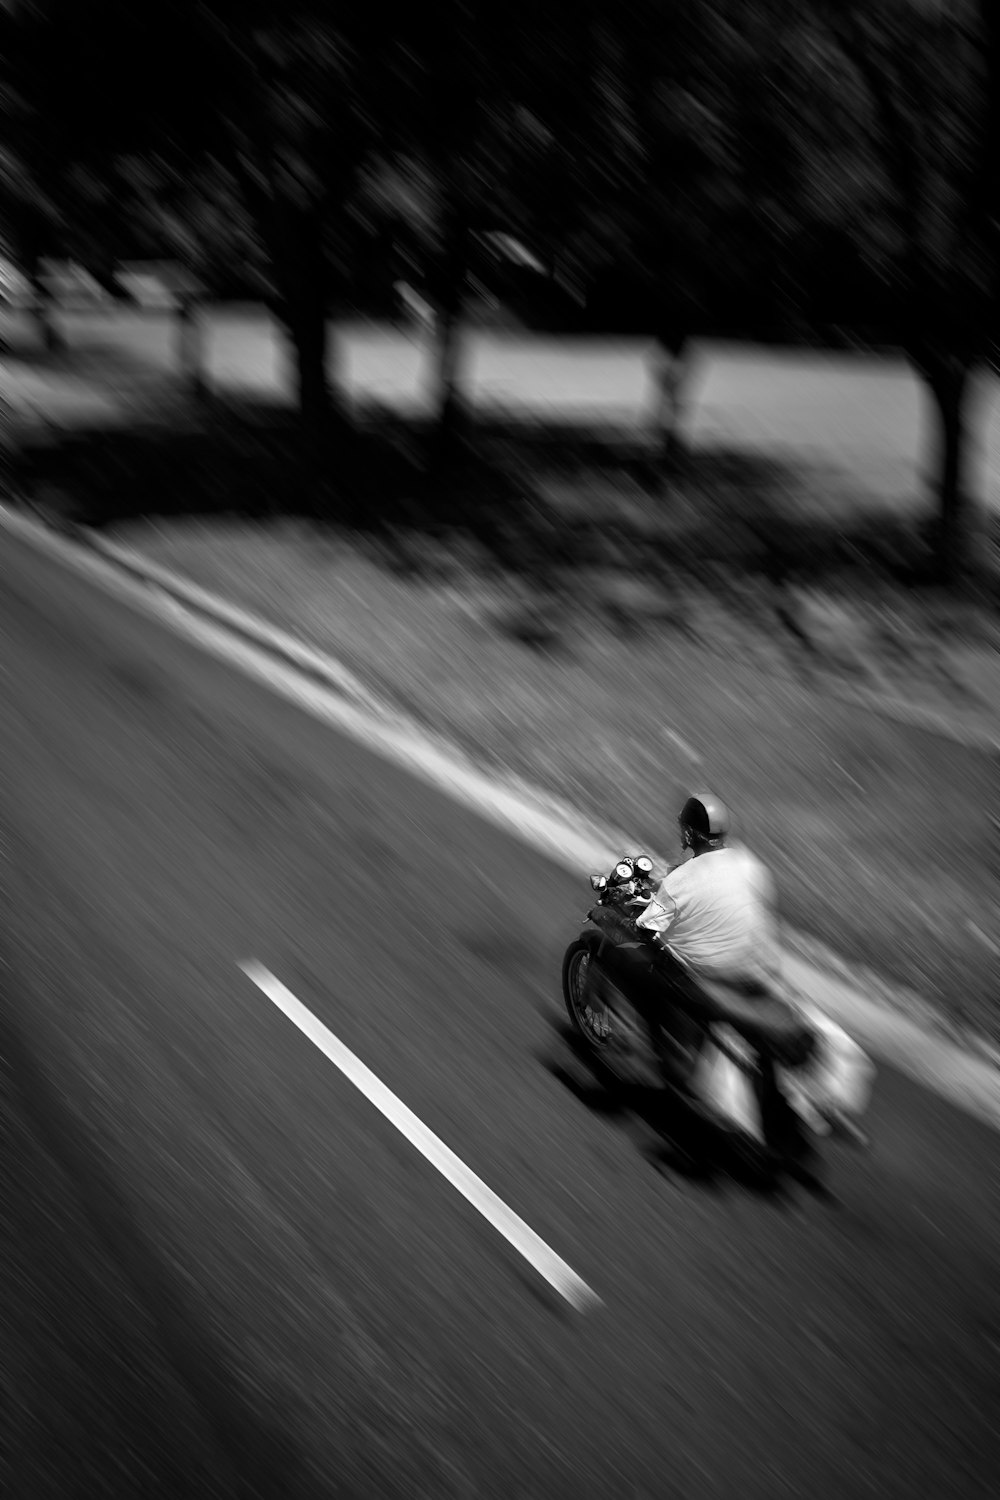 Panning foto di un uomo in sella a una motocicletta